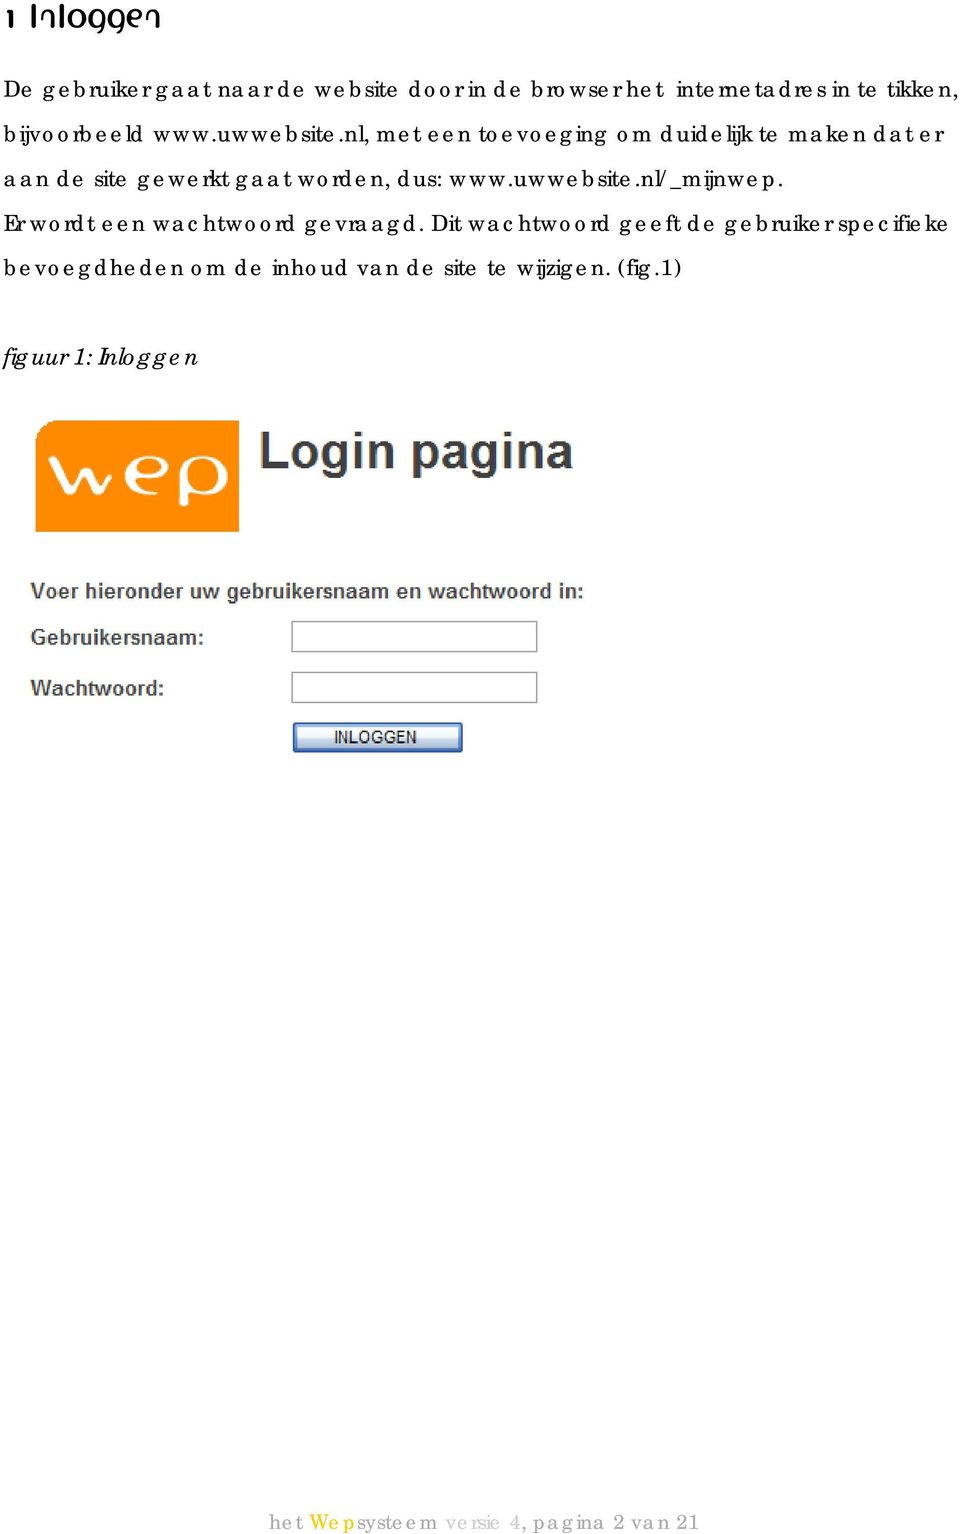 uwwebsite.nl/_mijnwep. Er wordt een wachtwoord gevraagd.